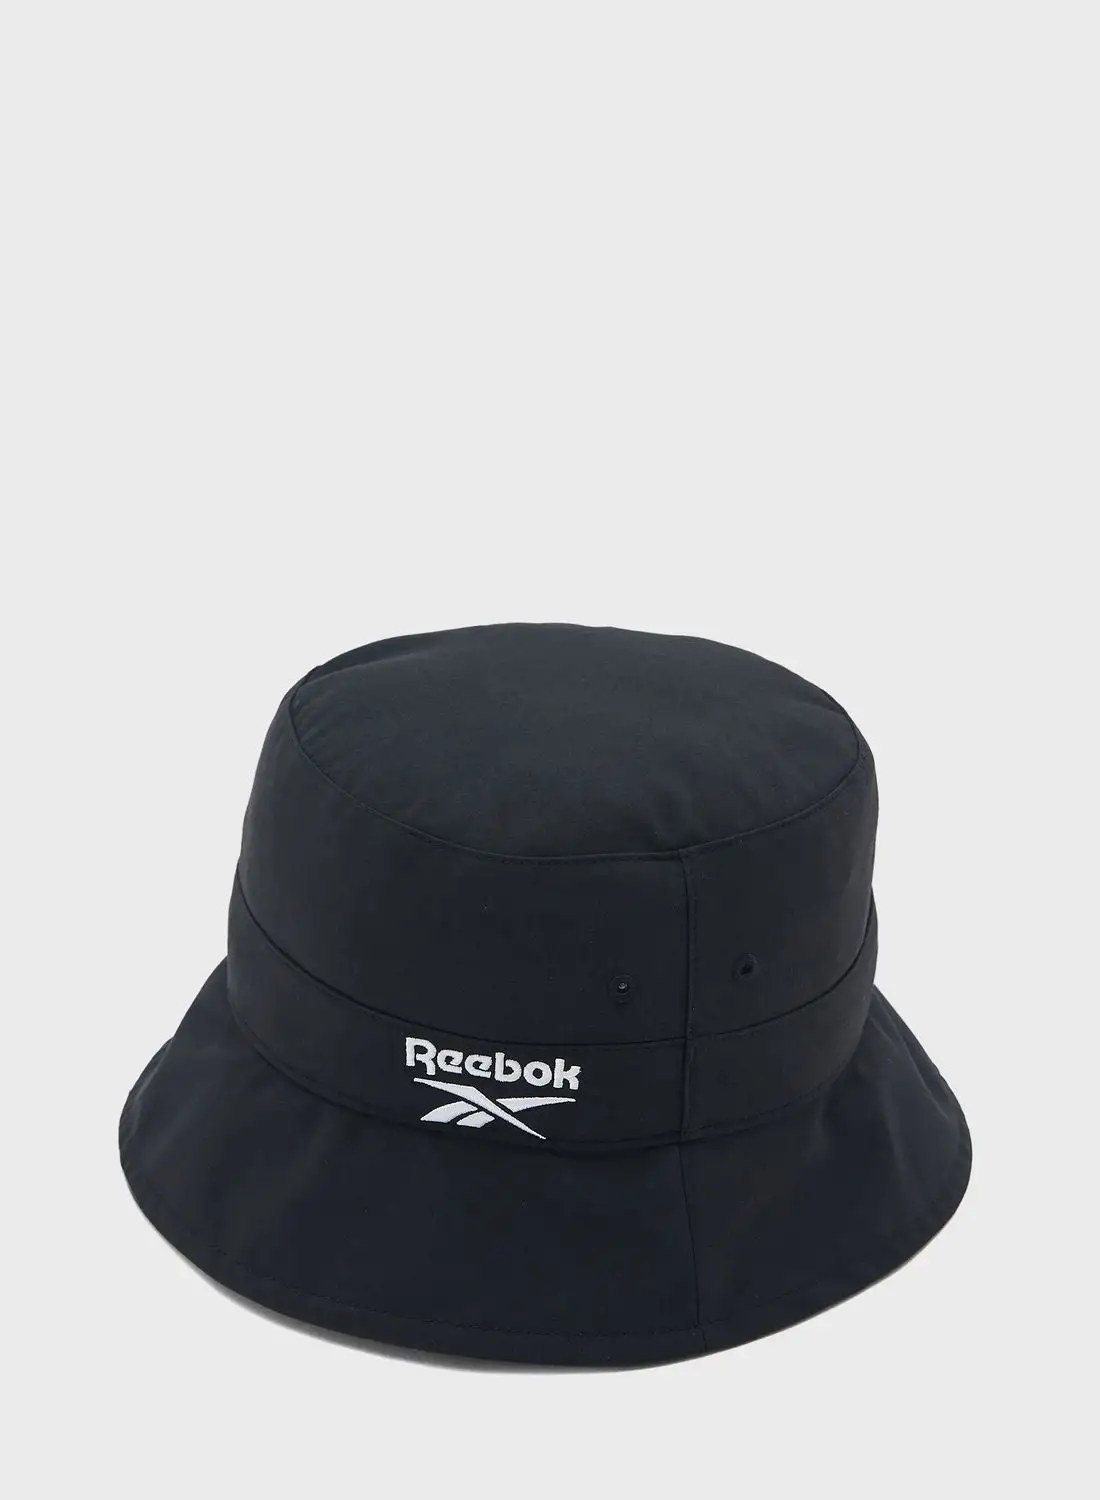 قبعة دلو كلاسيكية من ريبوك